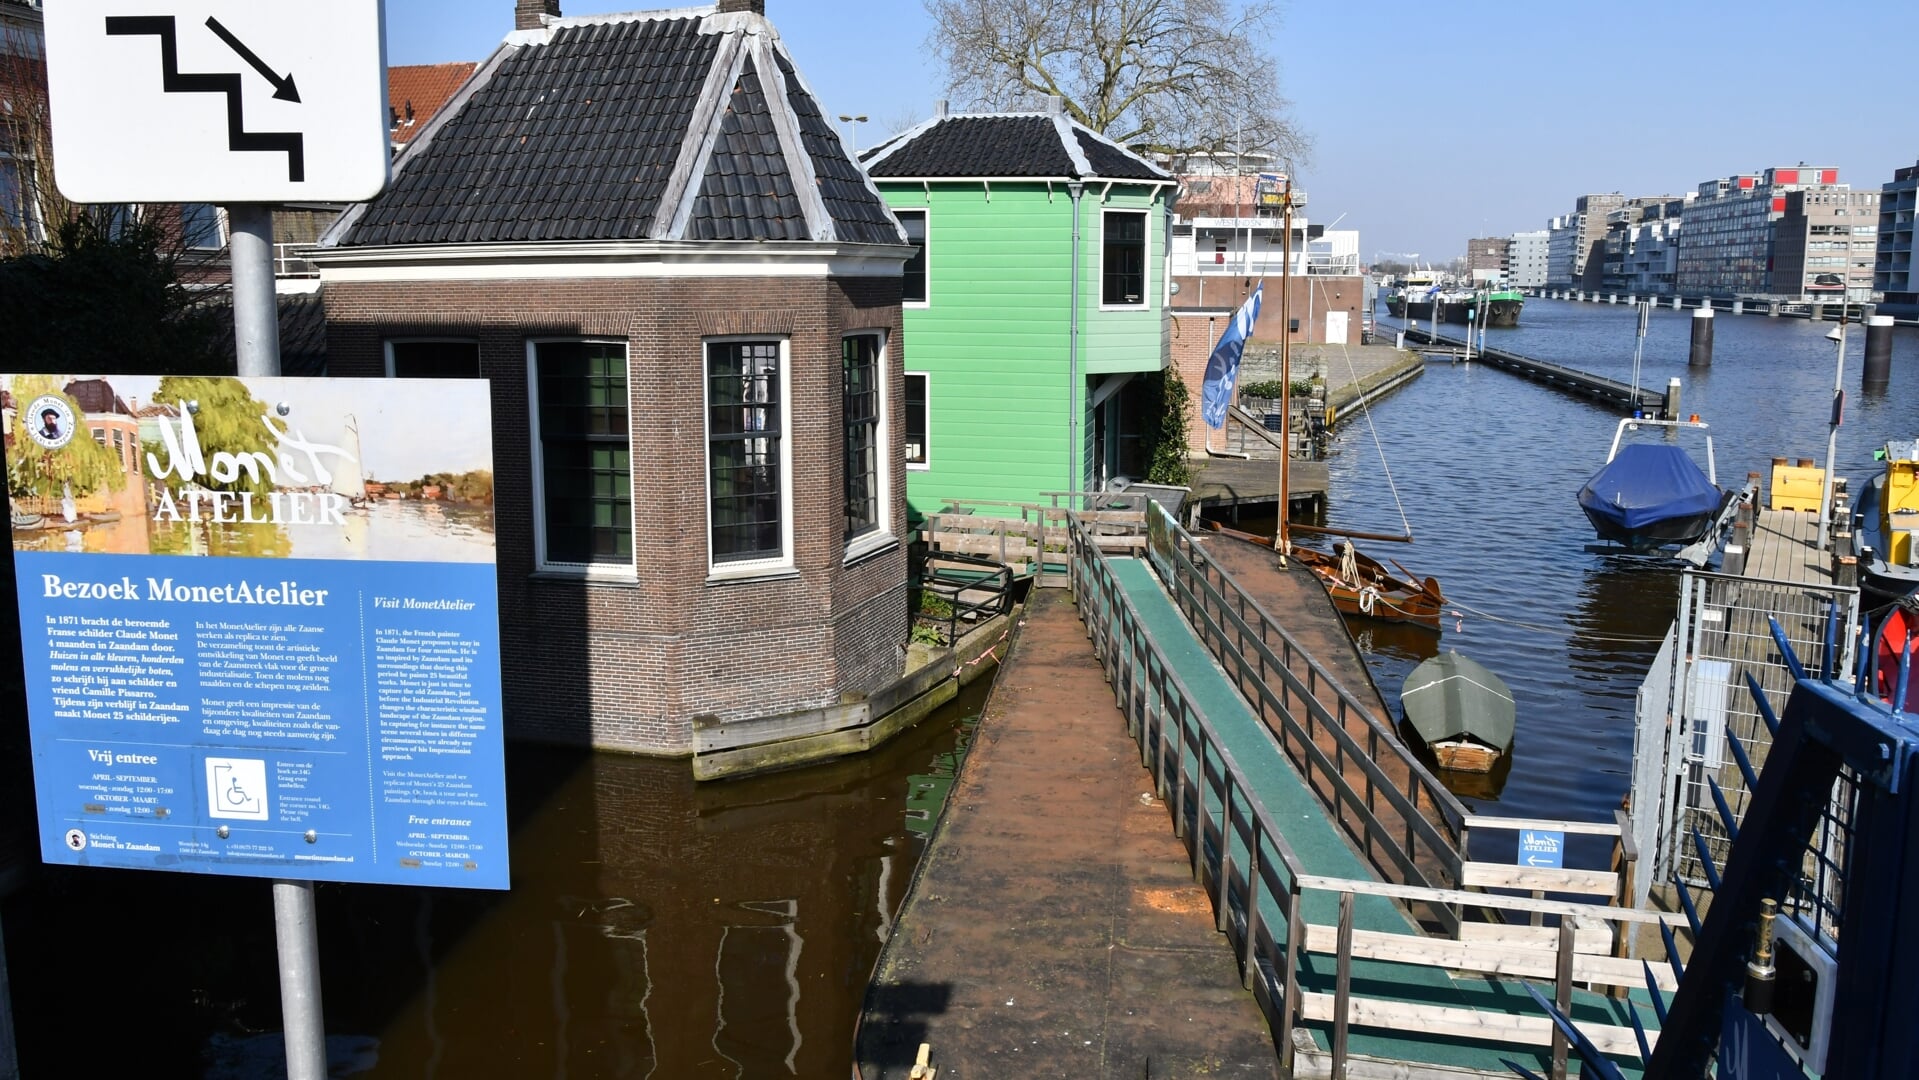 Ingang van het Monet atelier aan de Beatrixburg.